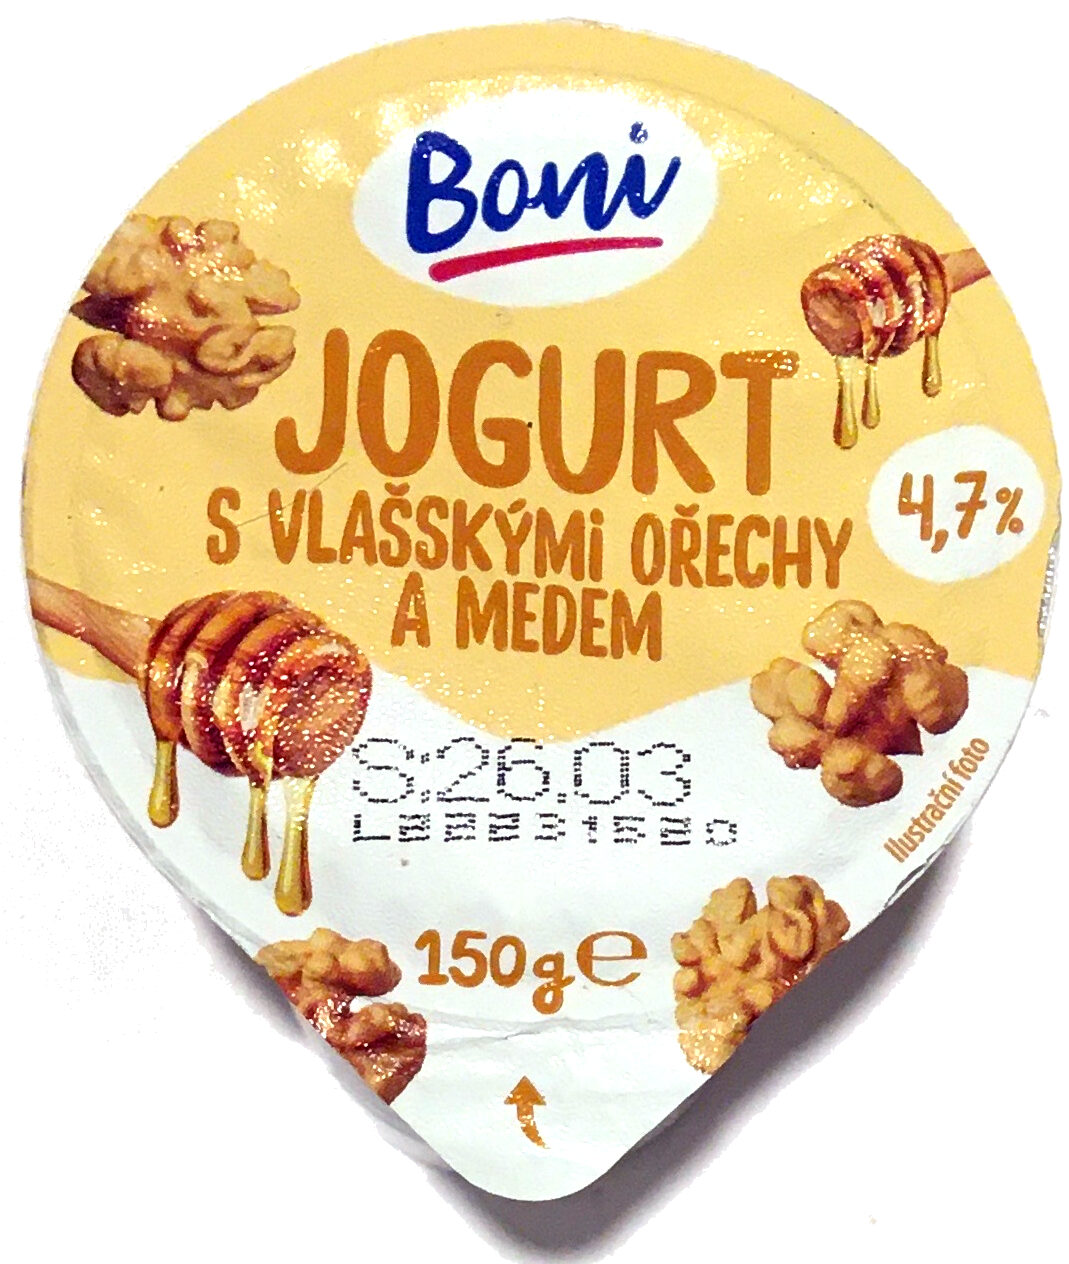 Jogurt s vlašskými ořechy a medem - Product - cs